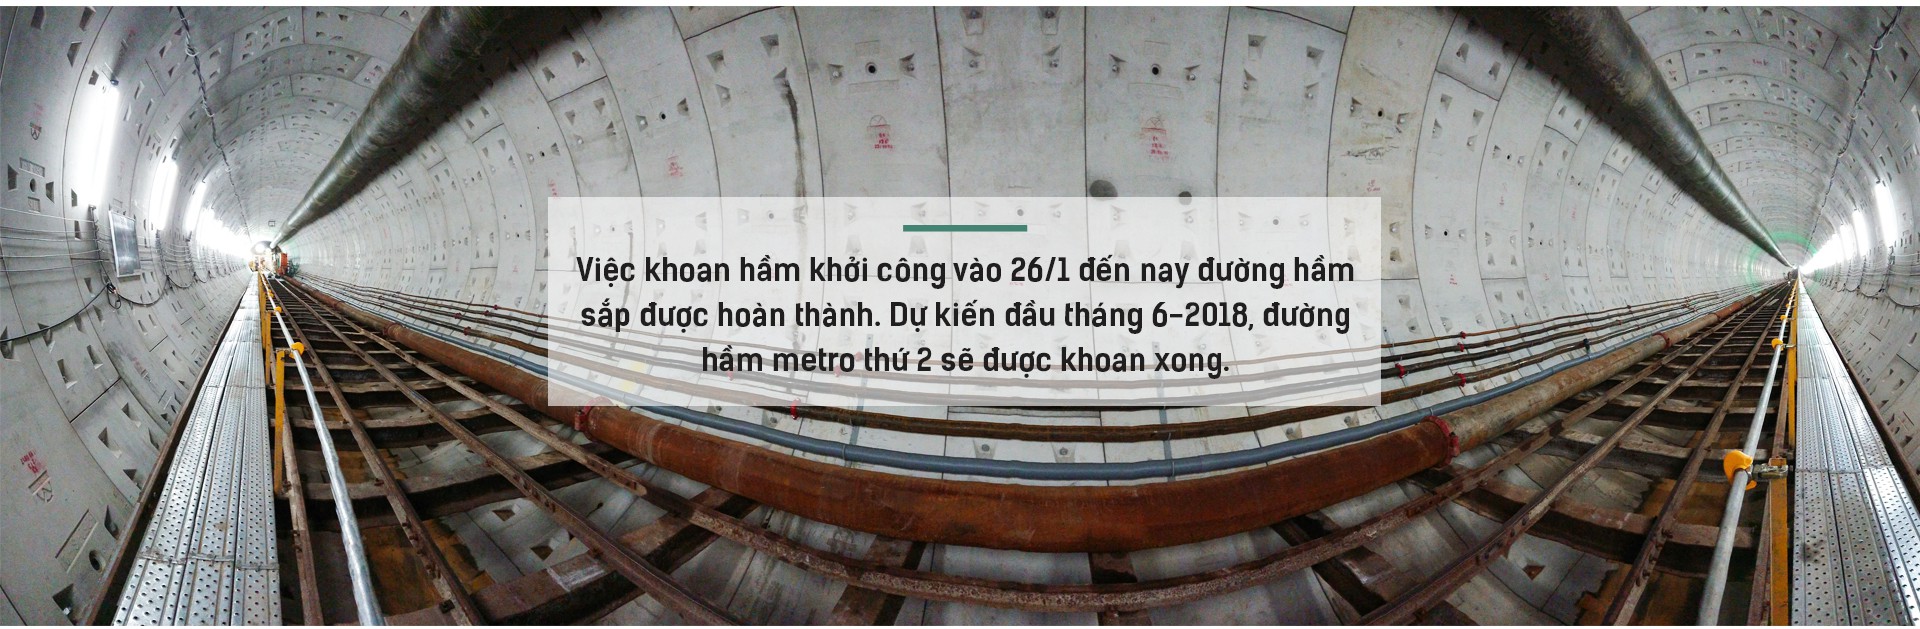 Ngắm đường hầm tàu điện đầu tiên tại Việt Nam sâu 17m dưới lòng đất Sài Gòn - Ảnh 7.